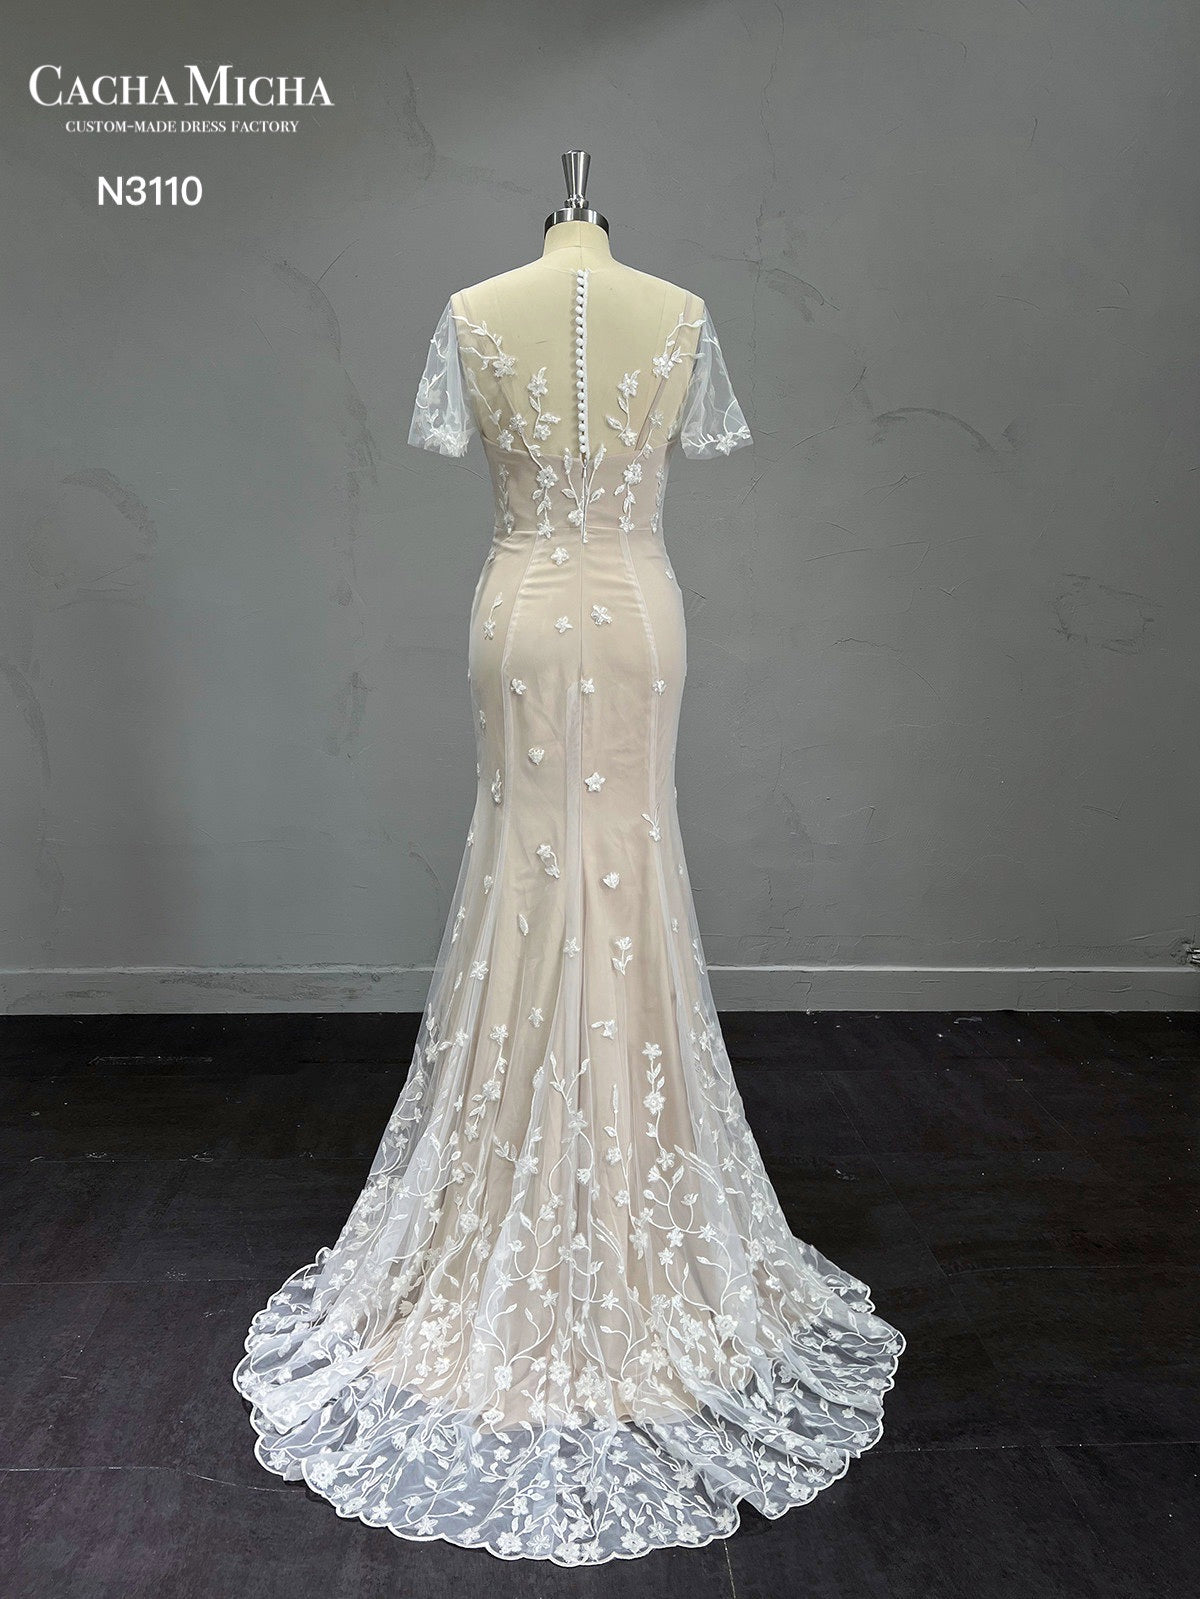 Short SLeeves Champagne Mermaid Wedding Dress N3110